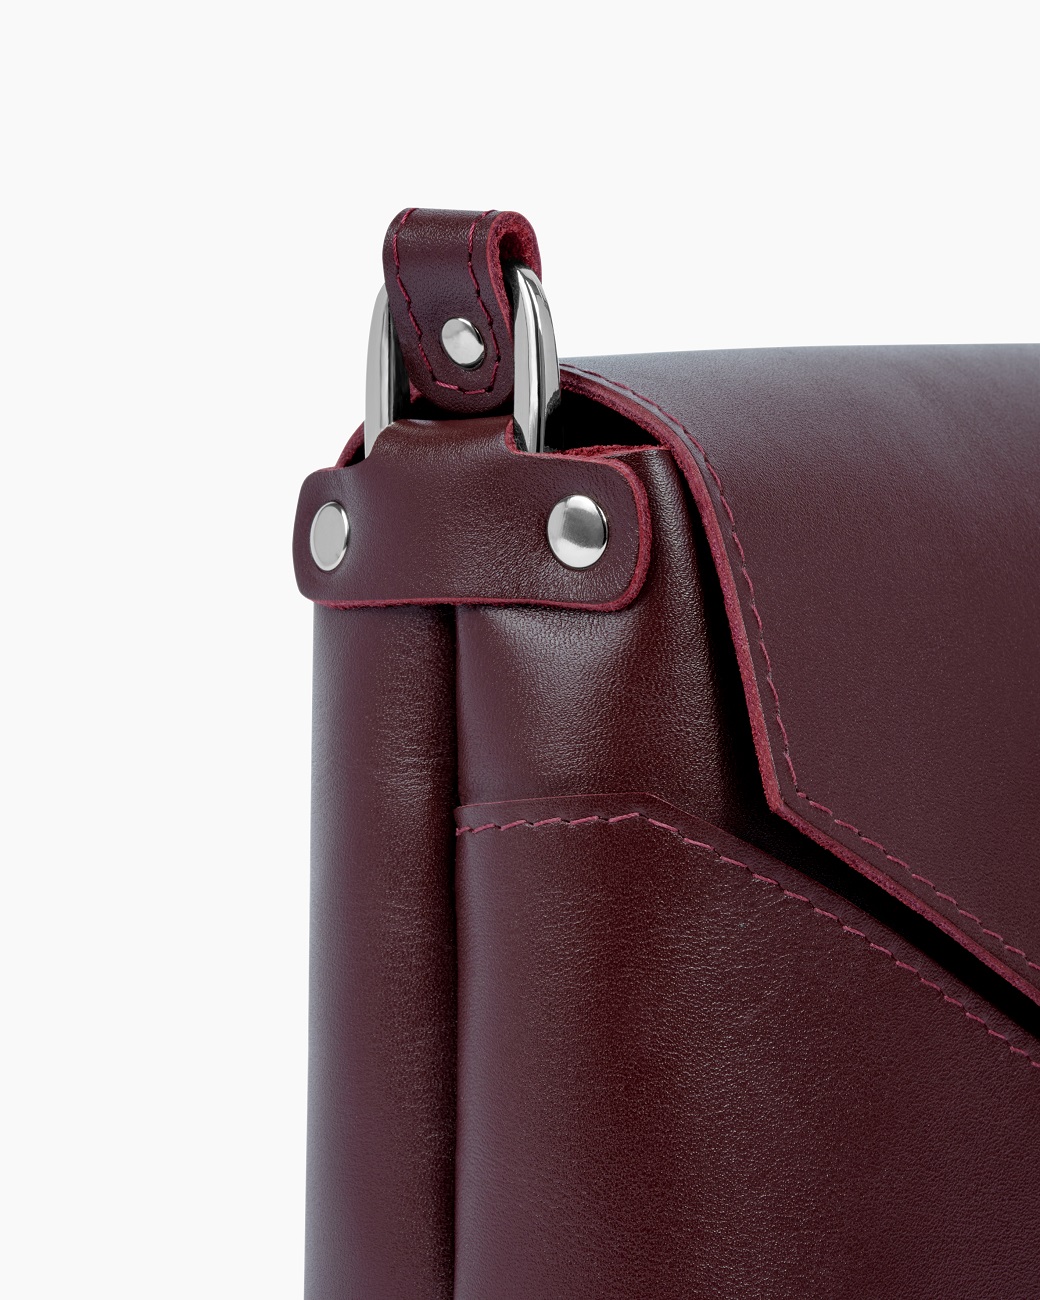 Женская сумка кроссбоди из натуральной кожи бордовая A011 burgundy